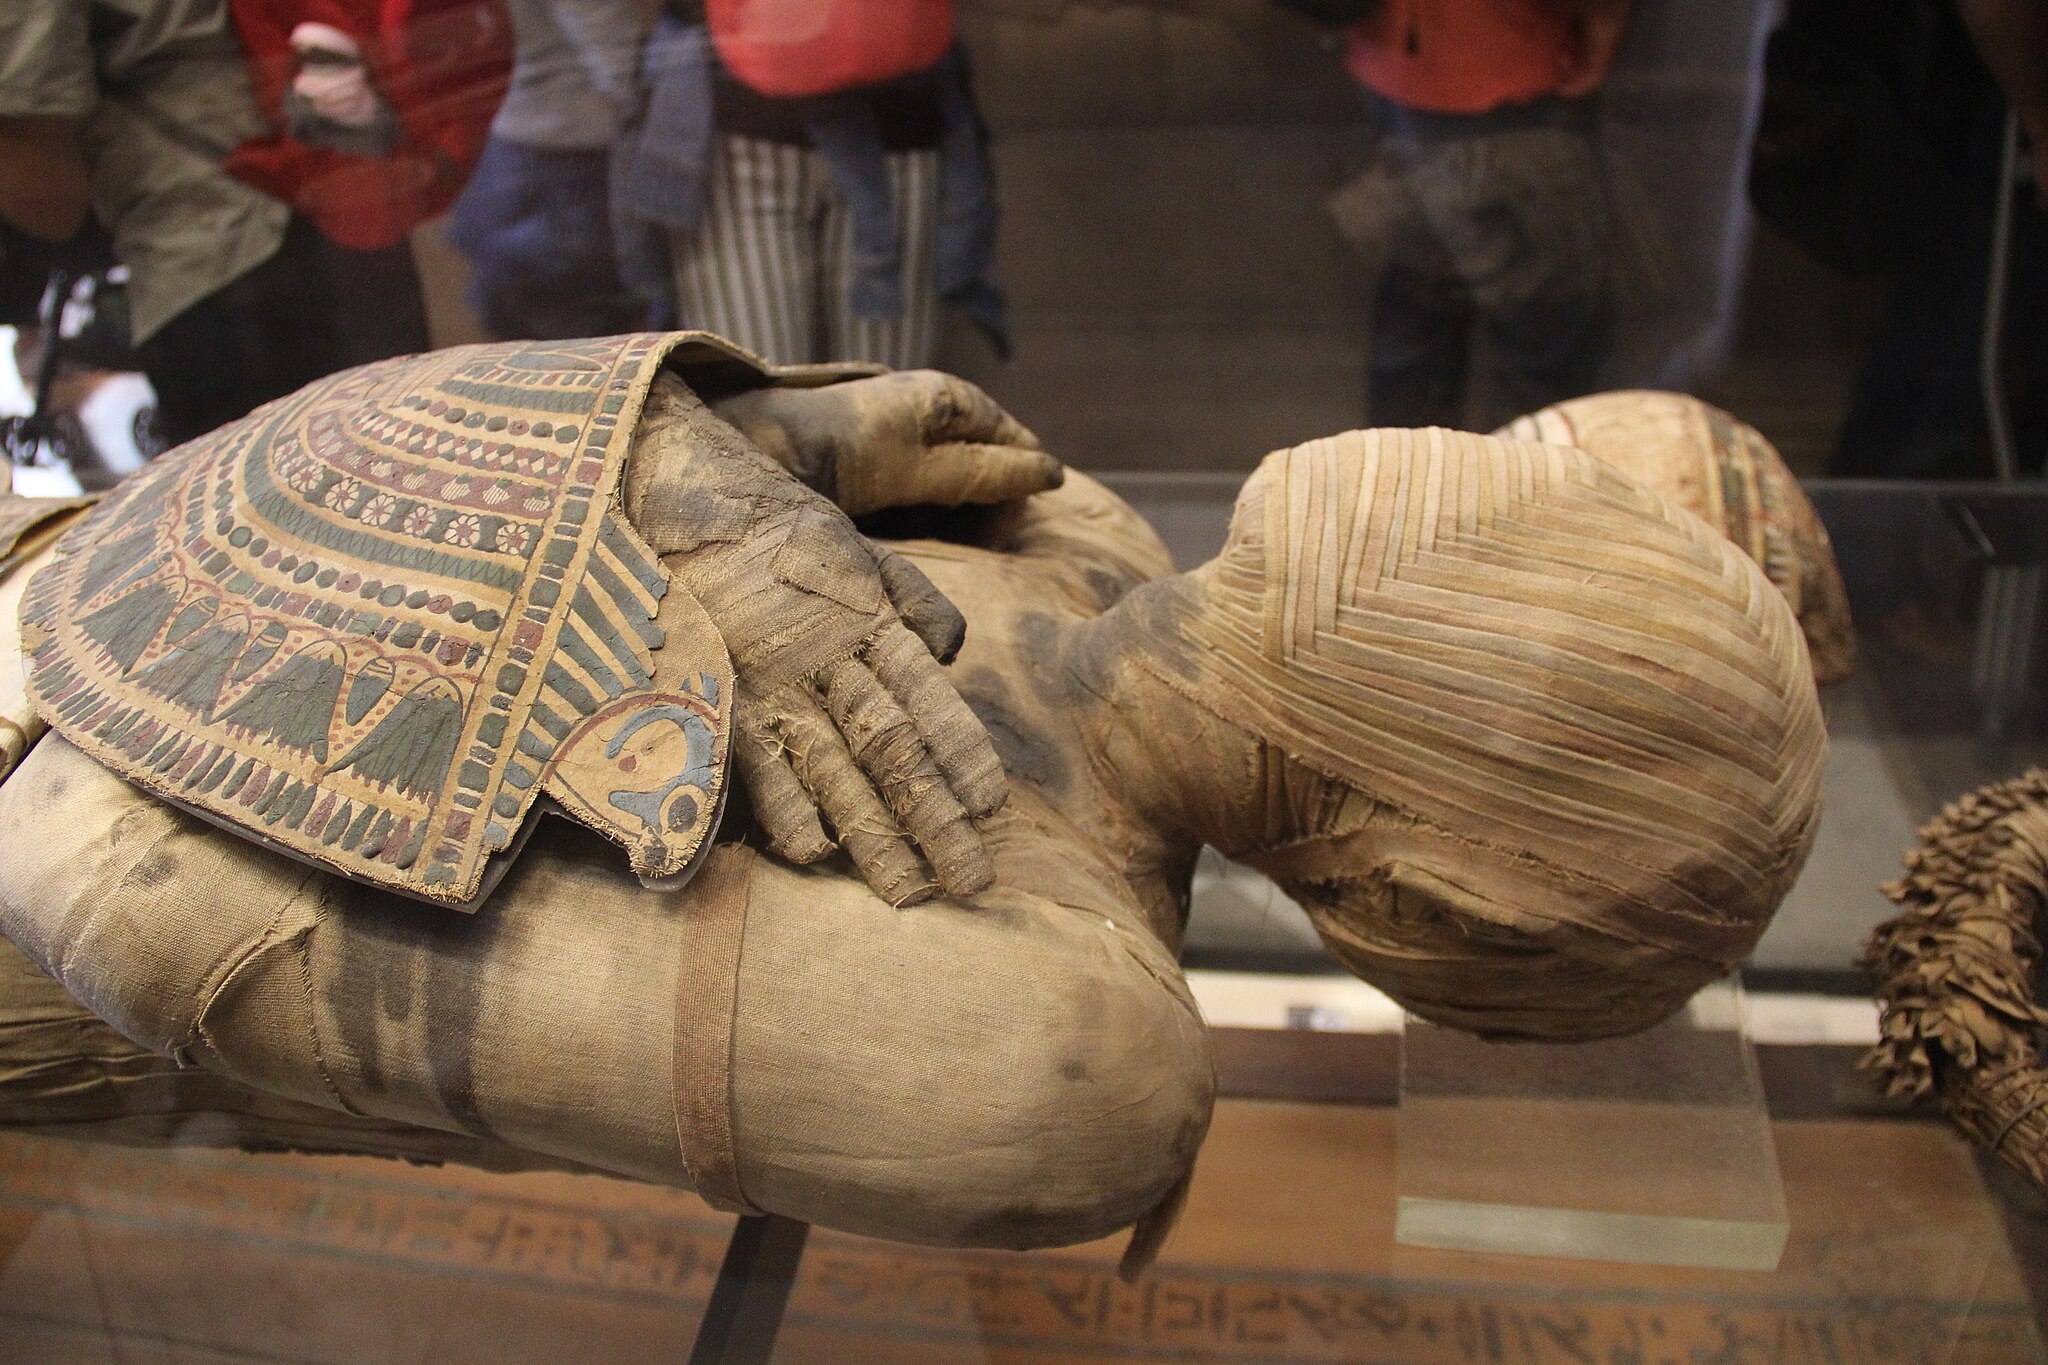 Remedios inusuales del pasado: en la Europa del siglo XV, la gente comía momias egipcias como medicina